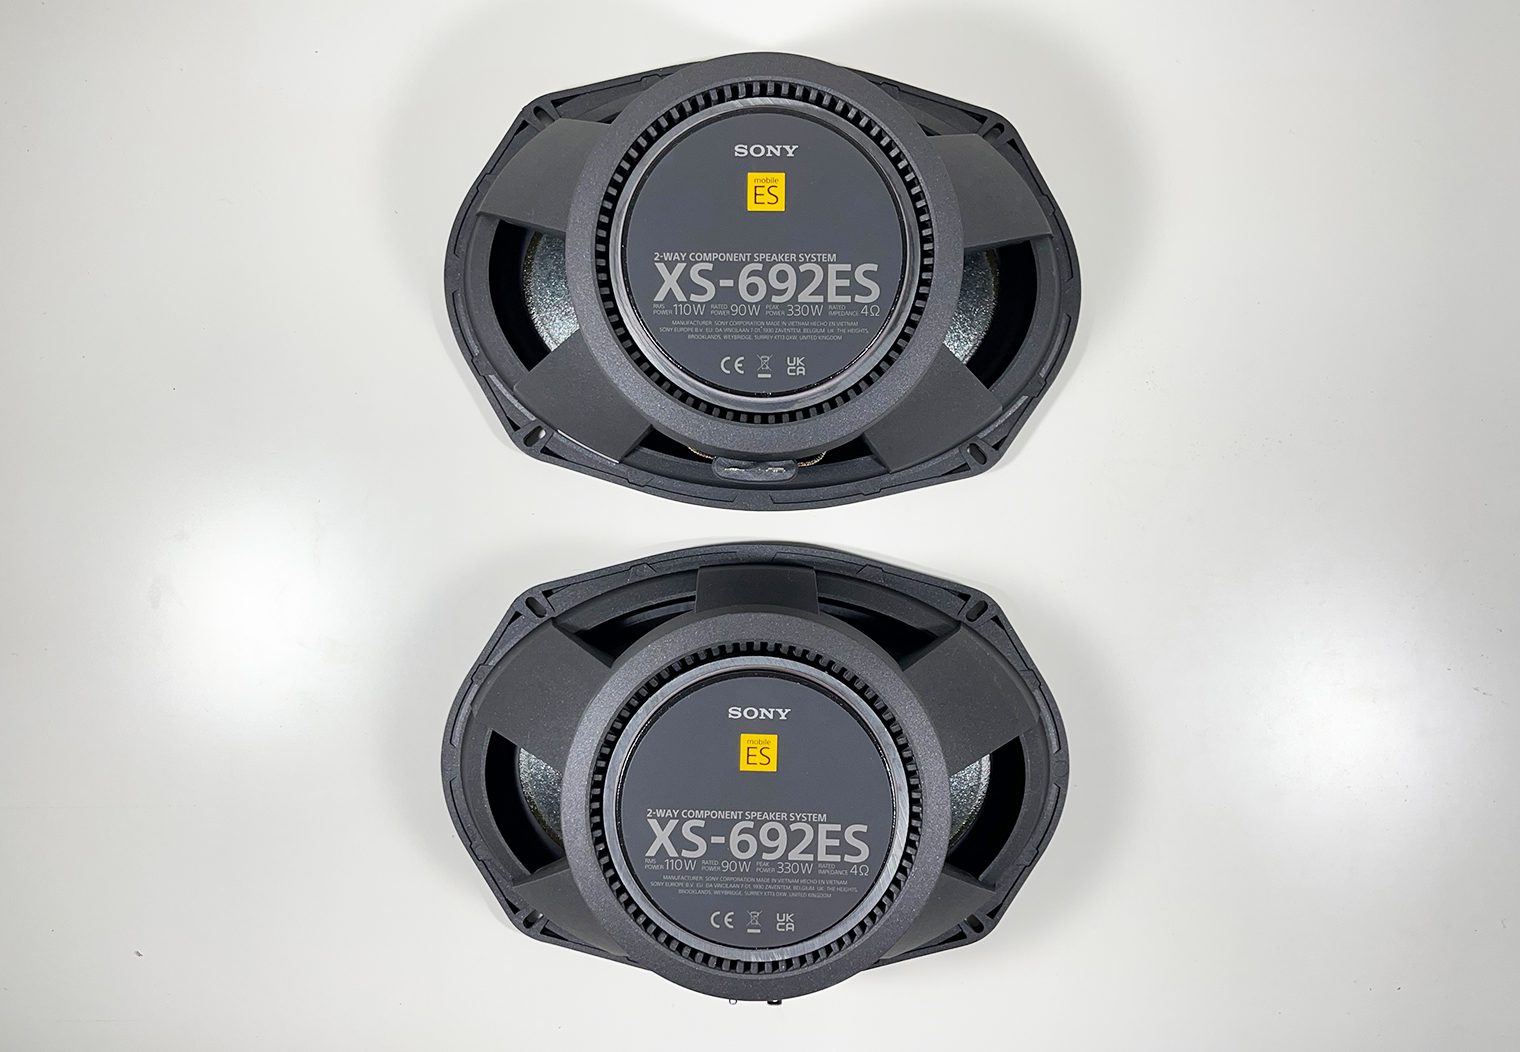 Sony XS-692ES rear